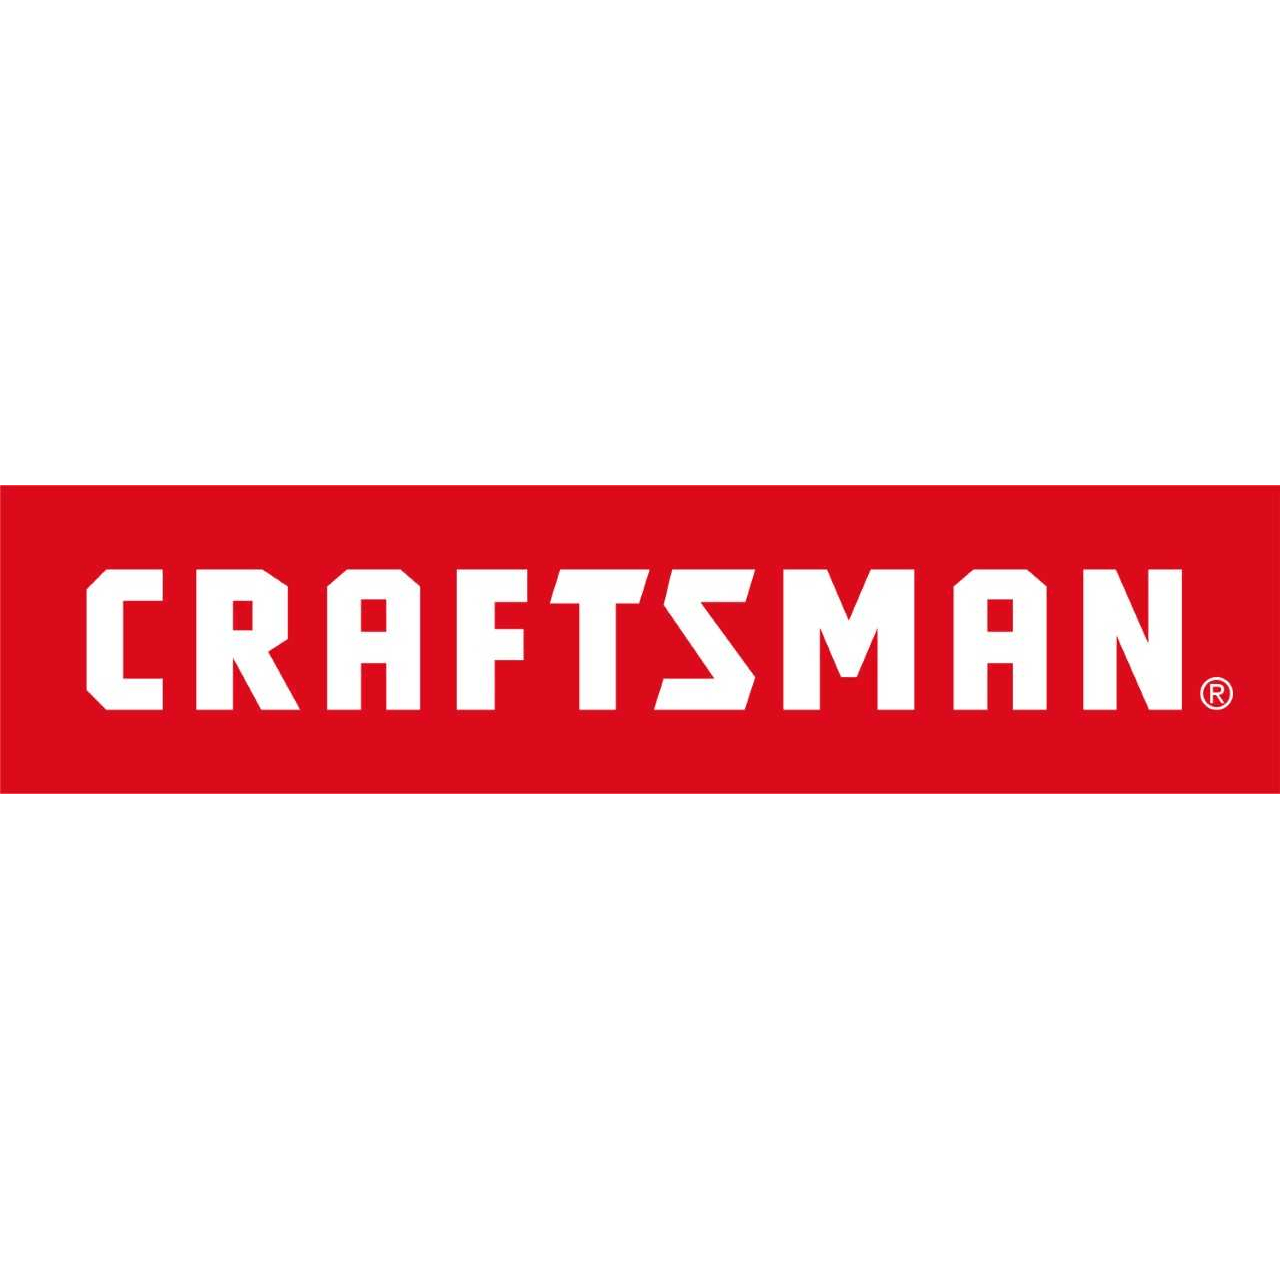 Craftsman Logo - Craftsman 826383-1 Shield Intake